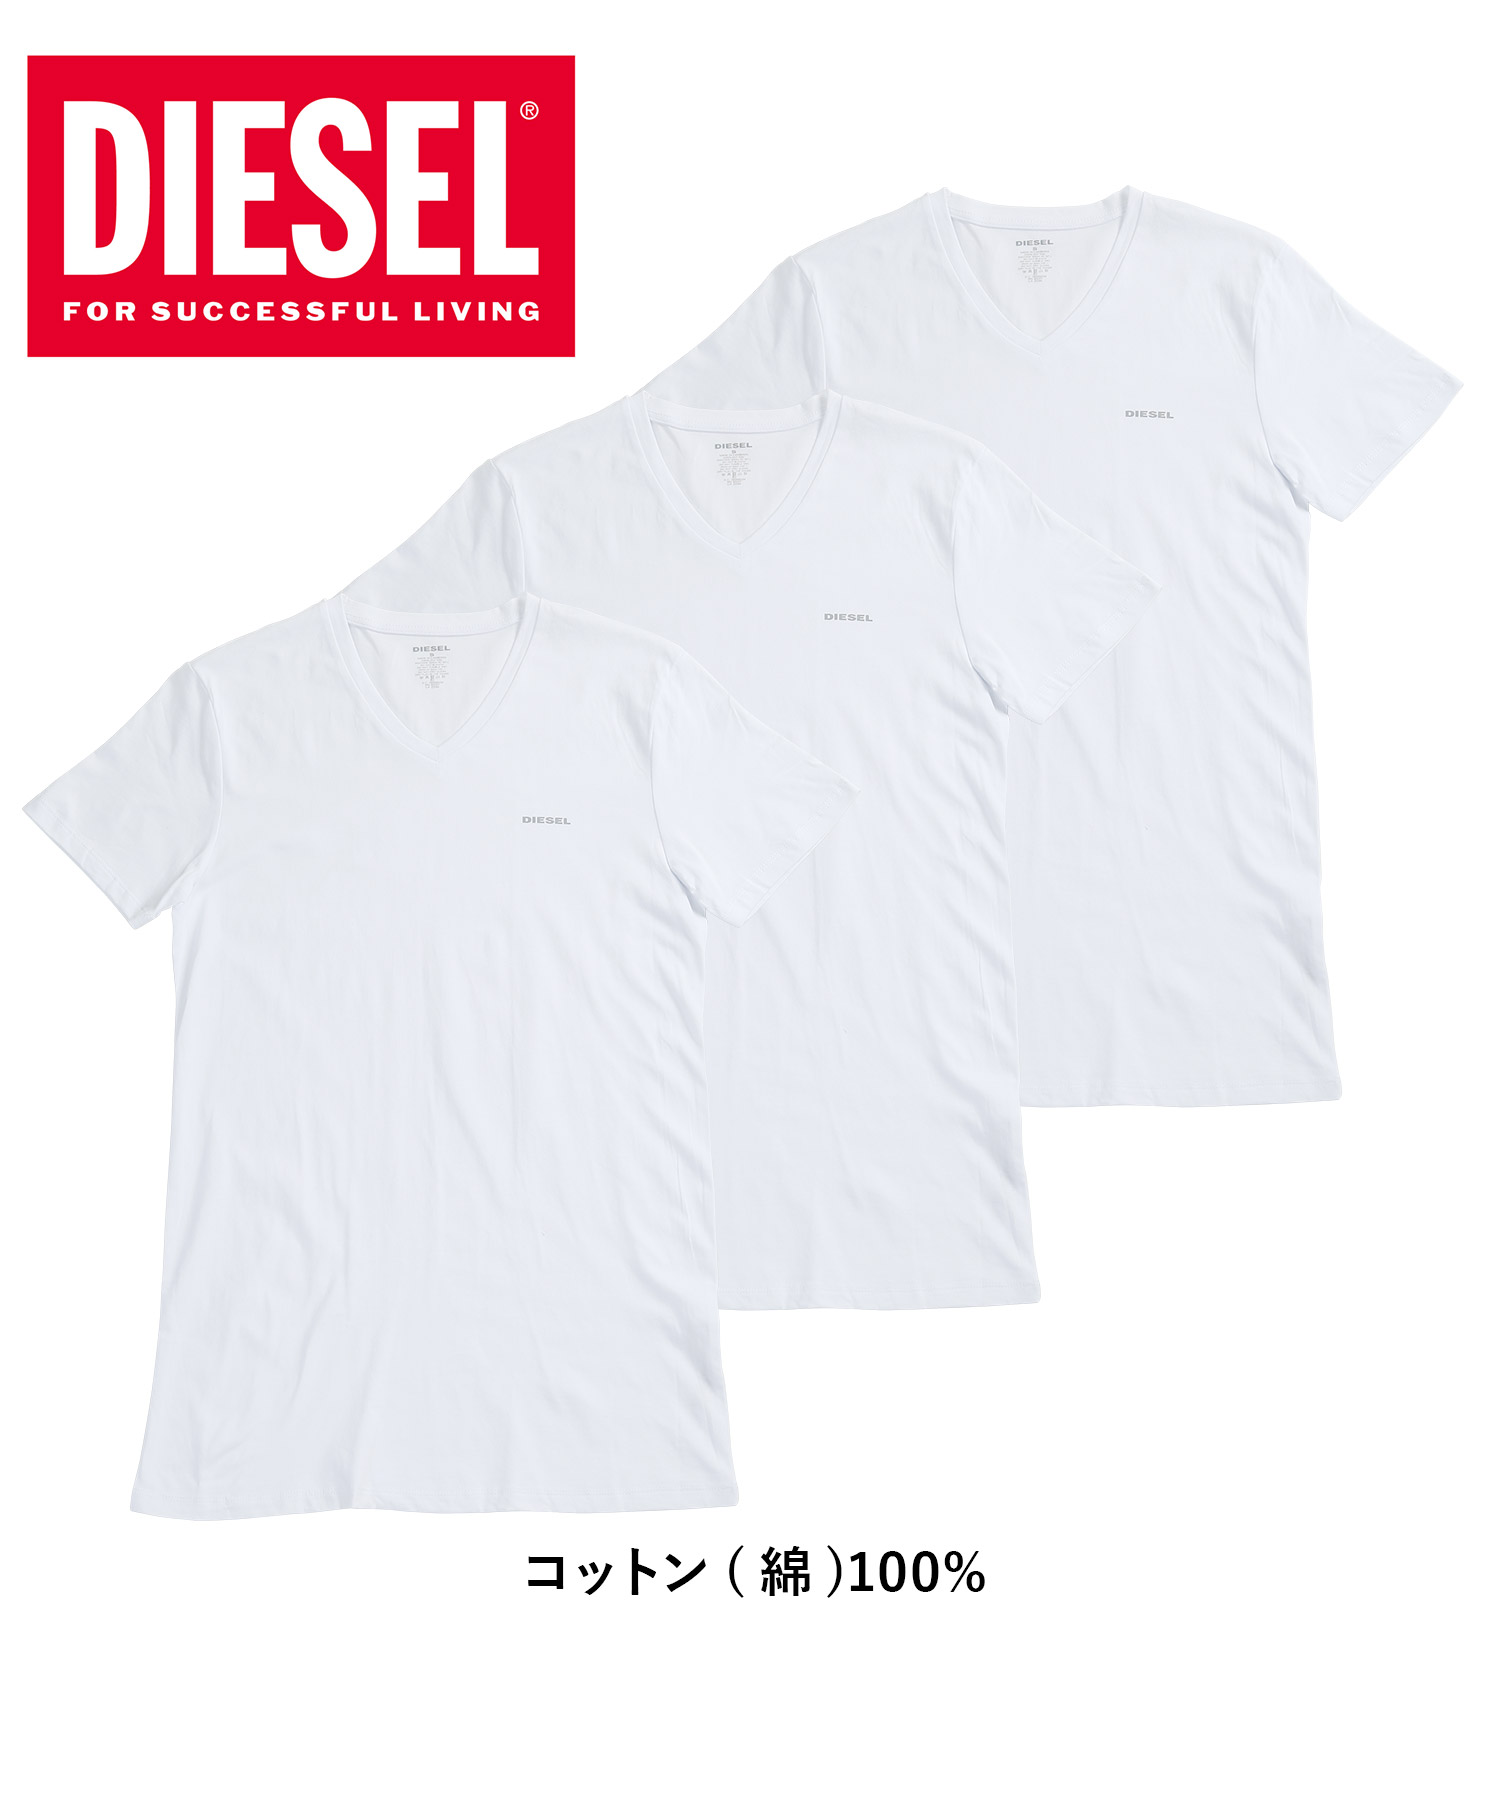 ディーゼル Tシャツ 3枚セット DIESEL メンズ 肌着 インナー 紳士 綿100% コットン ...